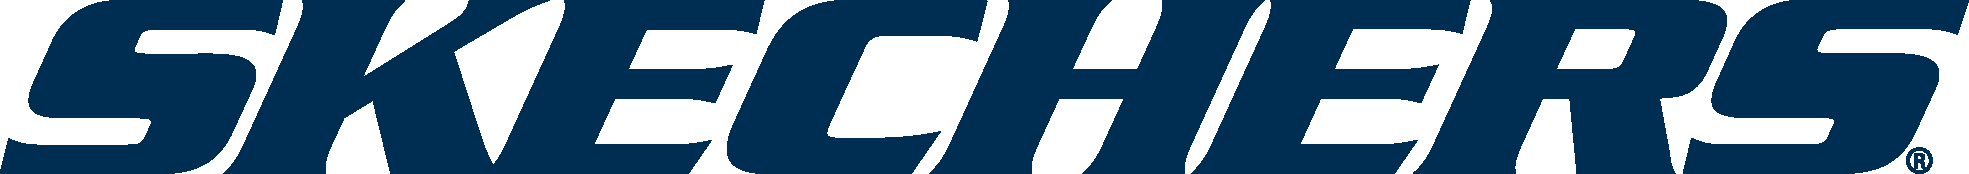 Skechers Logo - Skechers Logo Vector Free Download